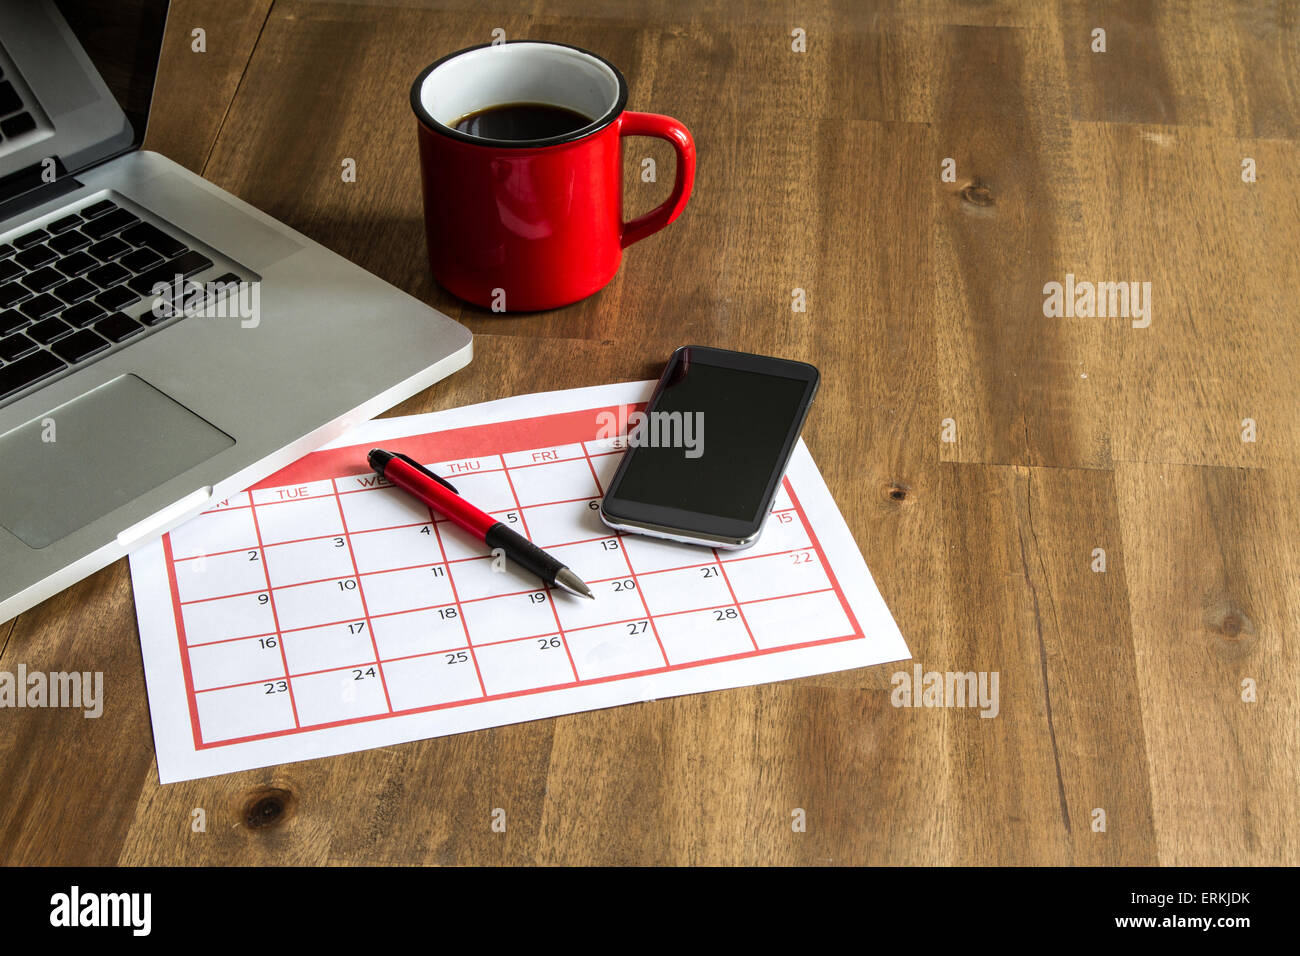 Arbeiten mit dem Laptop und Organisation von monatlichen Aktivitäten und Termine im Kalender Stockfoto